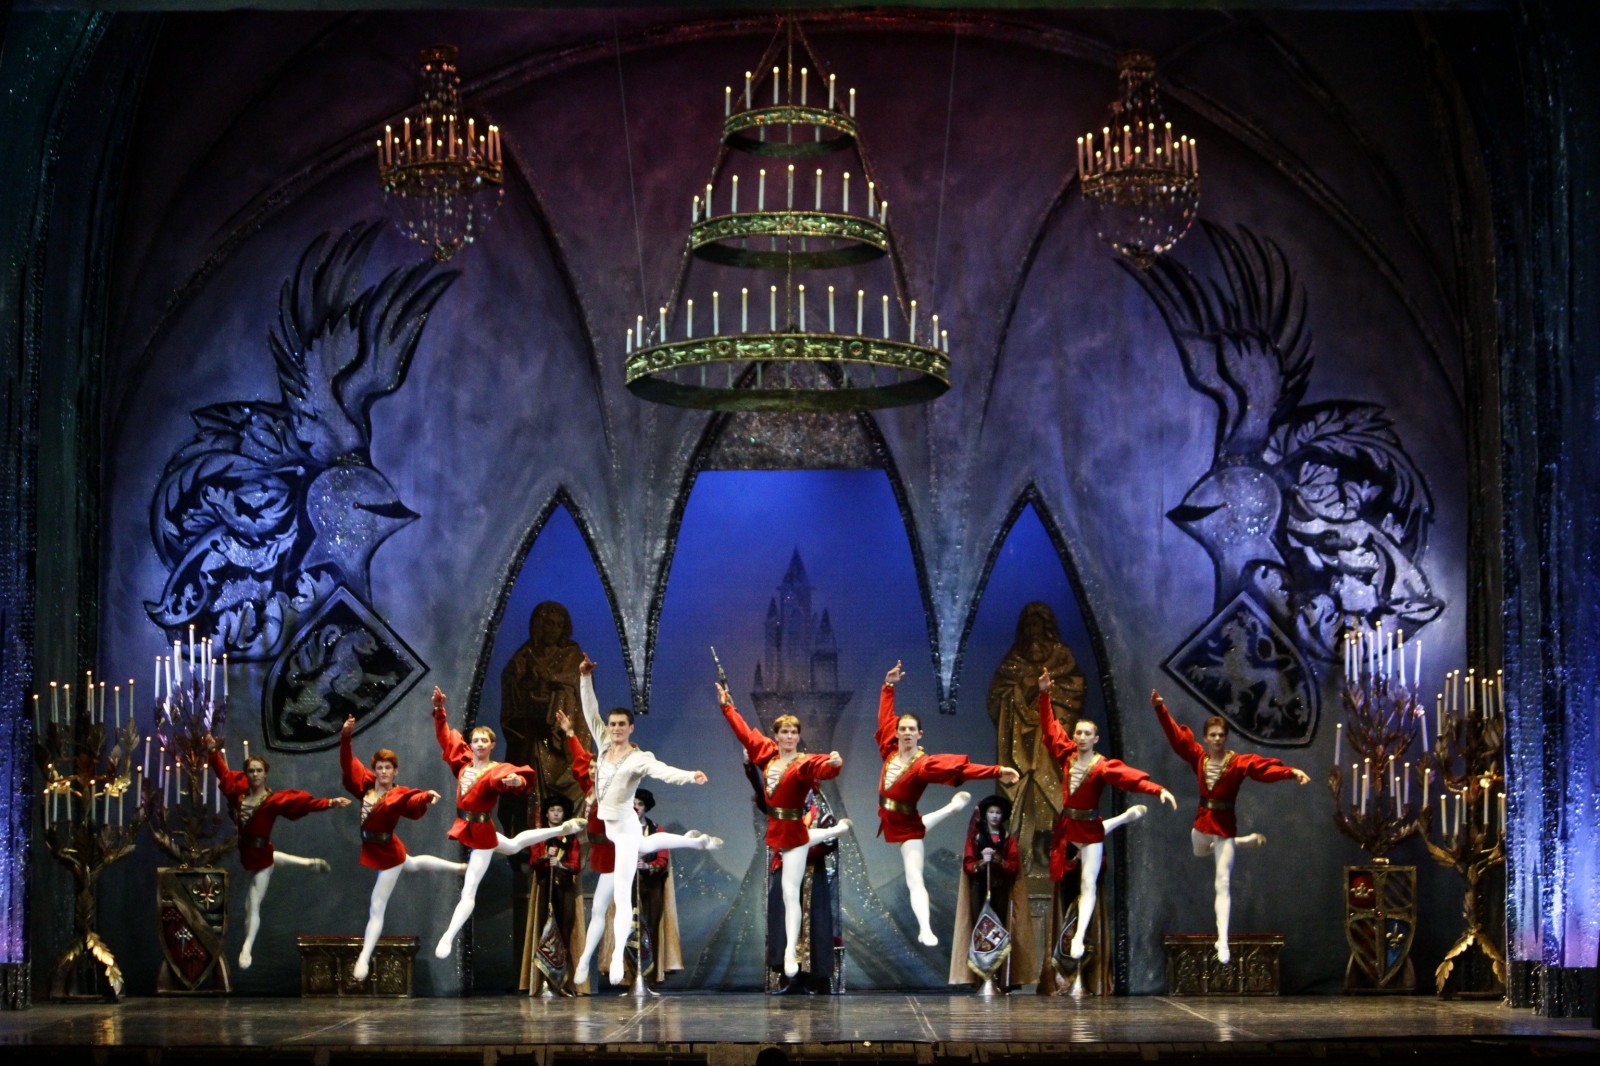 Нижегородский театр оперы и балета фото зала